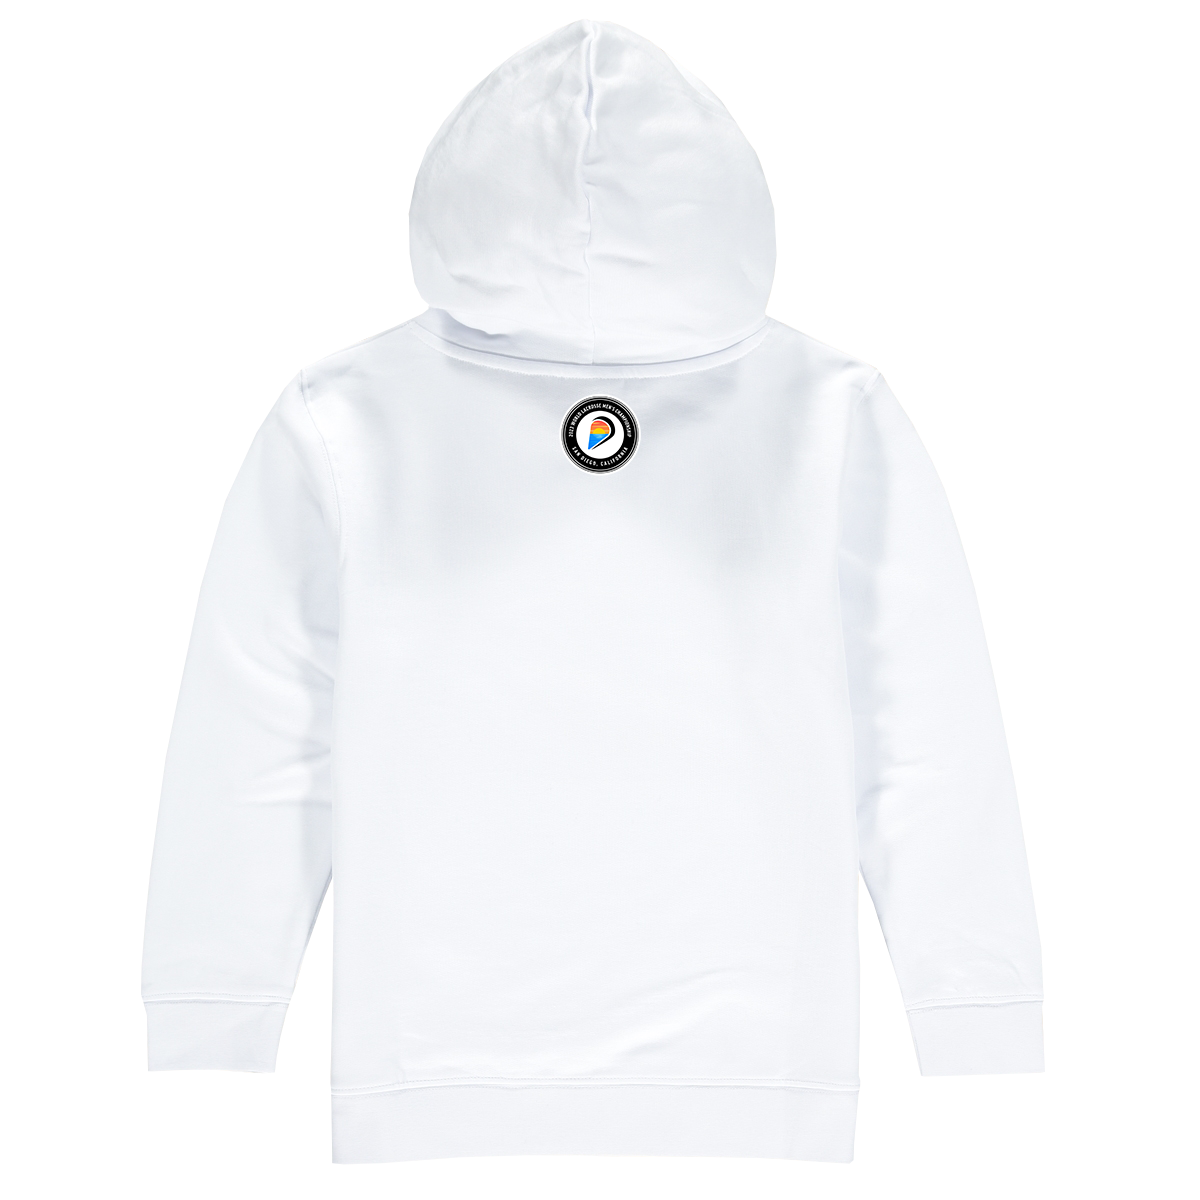 USA Premium Unisex Hoodie Sweatshirt White